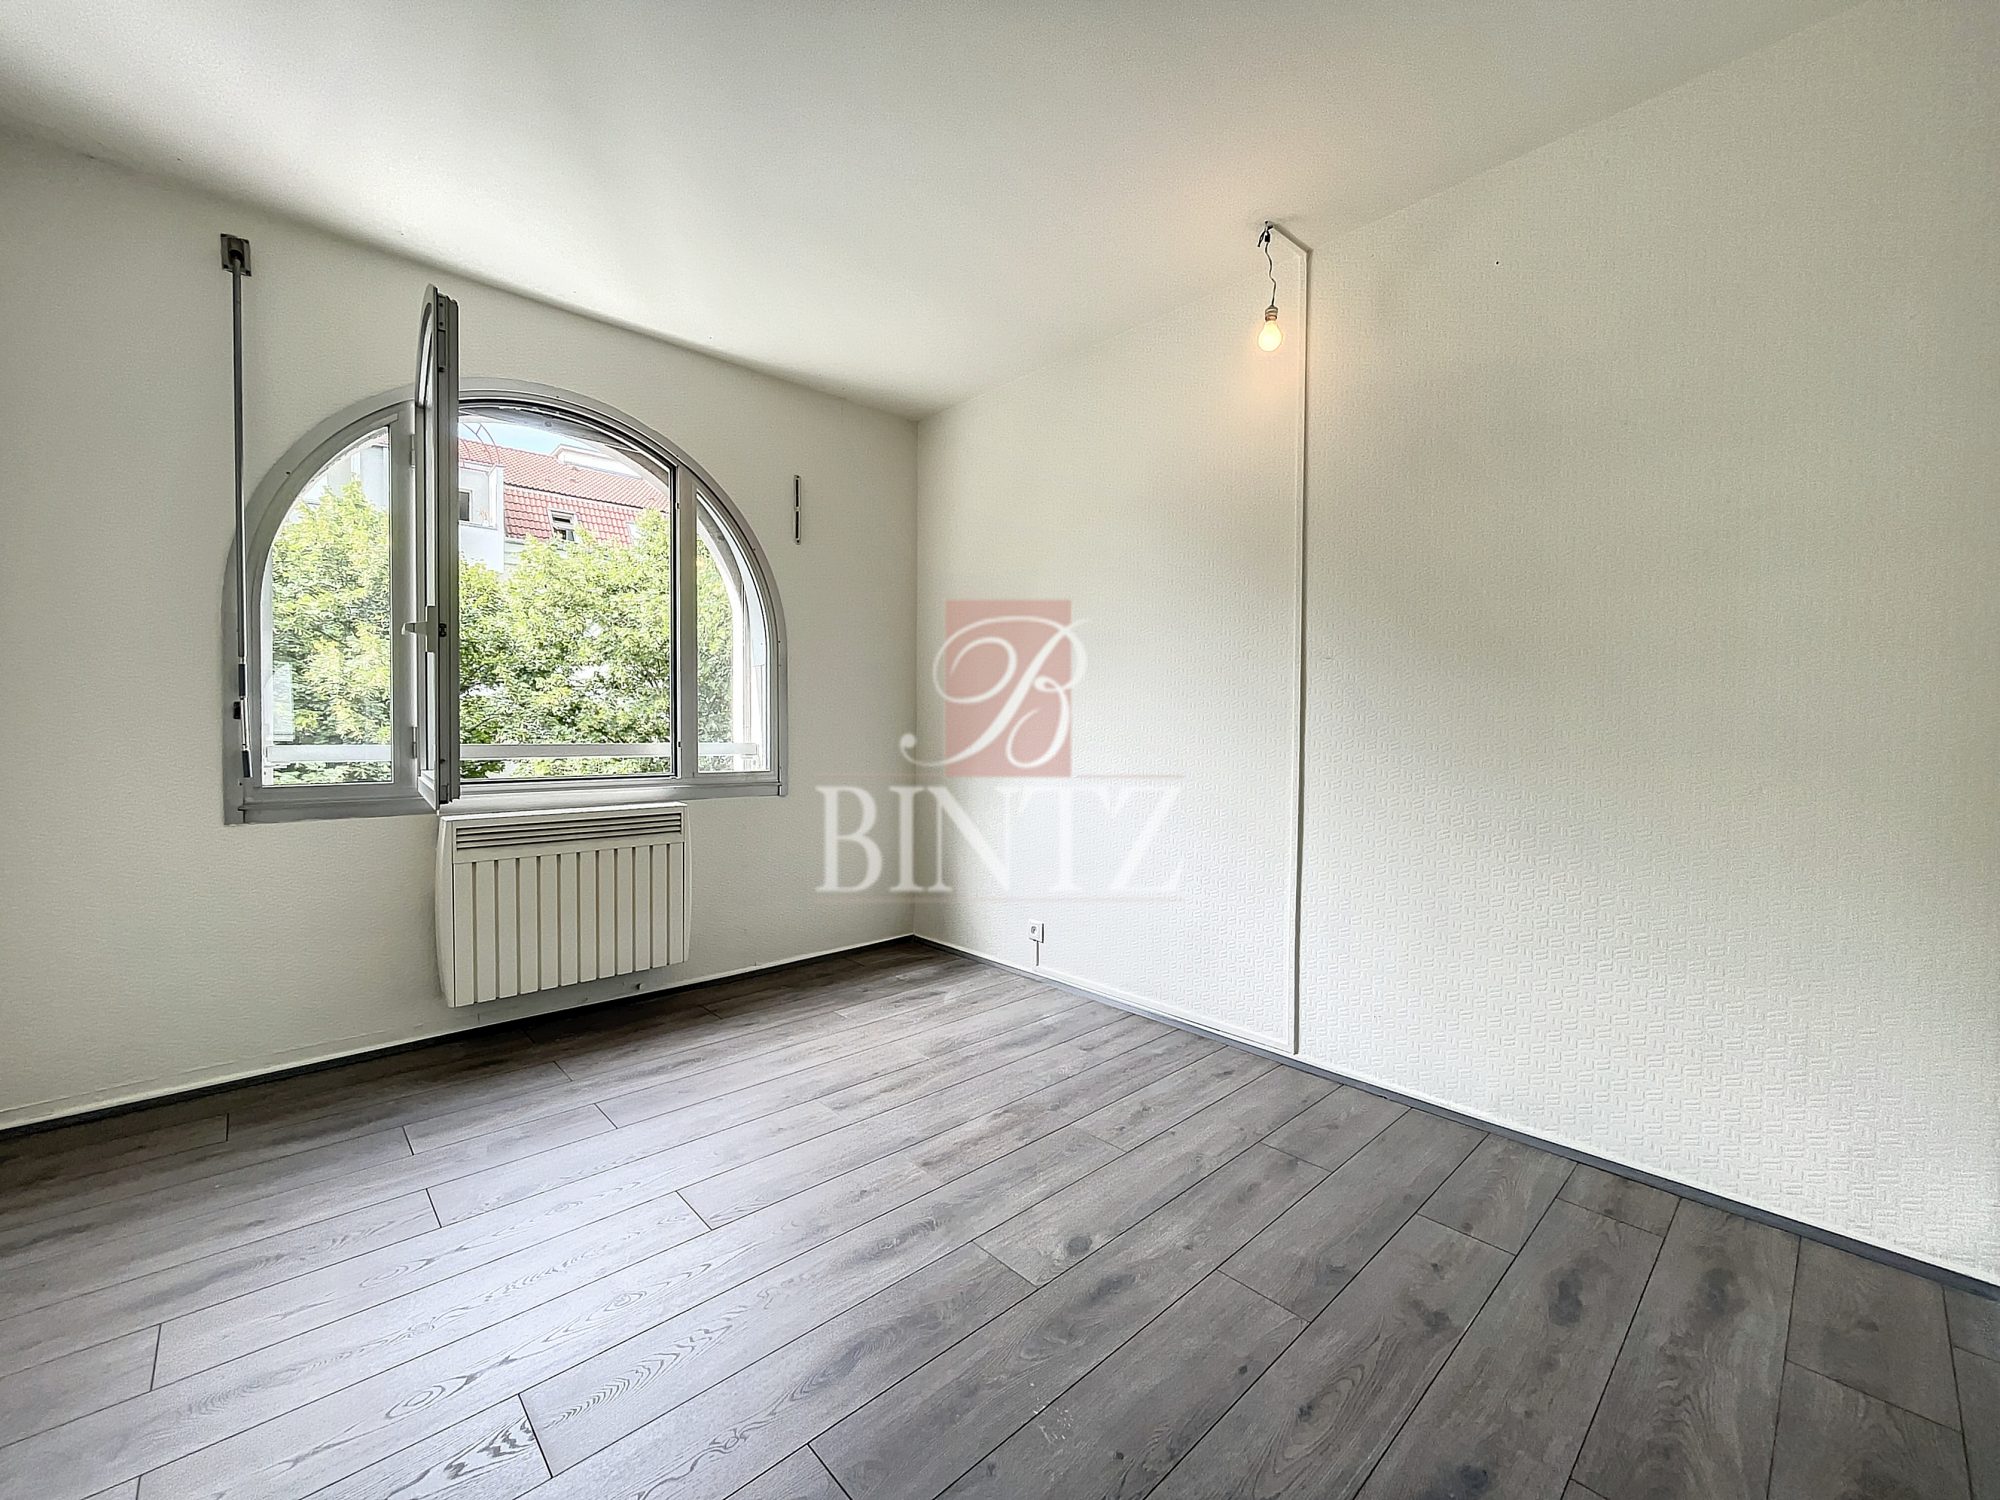 3PIECES PROCHE RIVÉTOILE - location appartement Strasbourg - Bintz Immobilier - 9